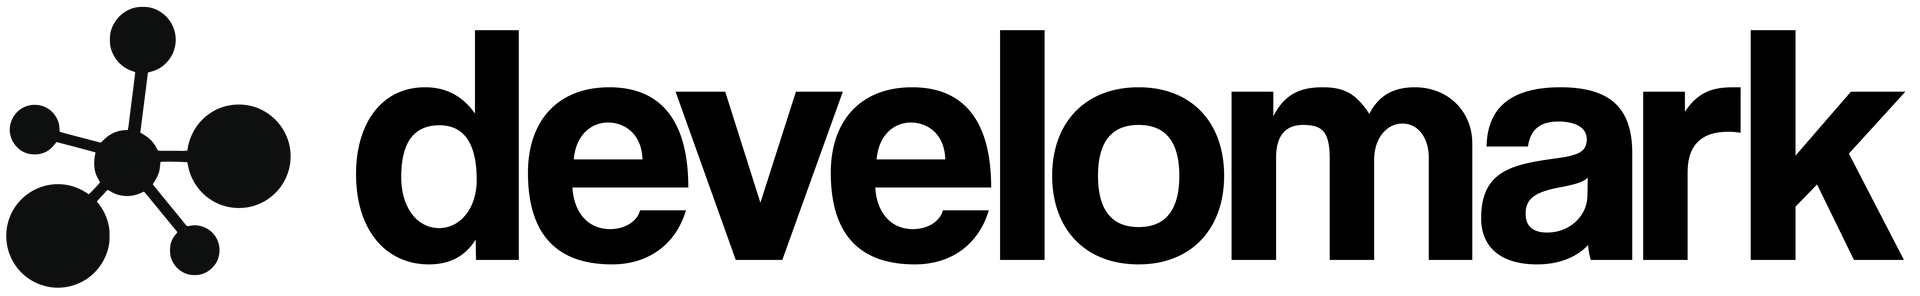 Develomark logo